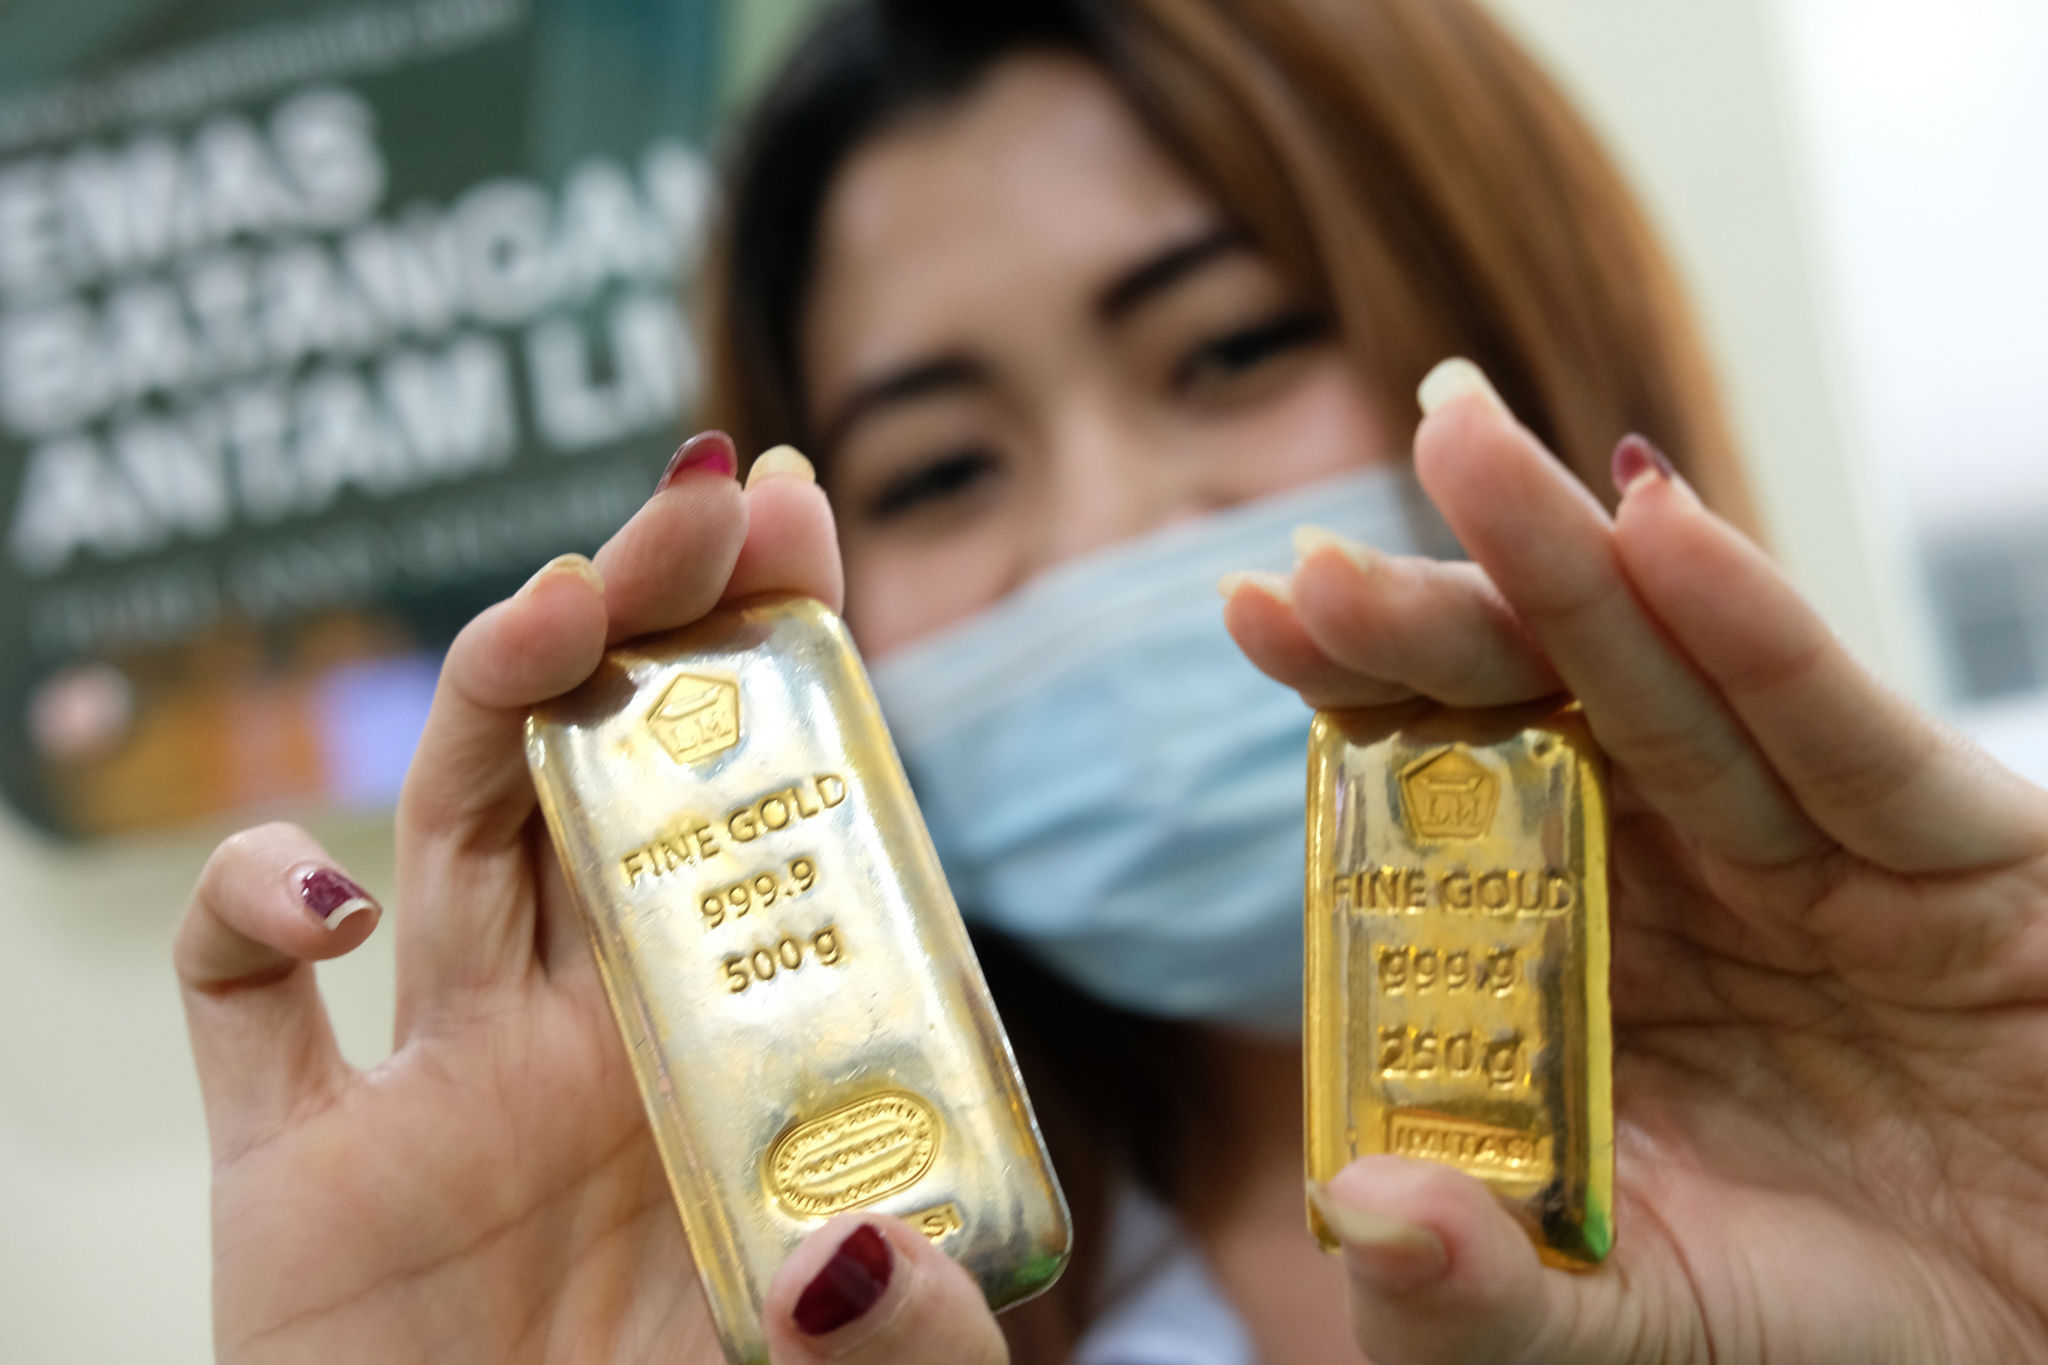 <p>Karyawan menunjukkan logam mulia di Butik Emas Antam, Jakarta, Kamis, 23 Juli 2020. Harga emas batangan PT Aneka Tambang Tbk. (Antam) pada hari ini, Kamis 23 Juli 2020 dipatok lebih rendah untuk ukuran 1 gram dibanderol Rp977.000, sedangkan pada posisi kemarin, Rabu 22 Juli 2020 sempat menyentuh level baru Rp982.000 untuk ukuran 1 gram, yang merupakan level tertinggi sepanjang sejarah.  PT Aneka Tambang Tbk. melansir penjualan emas di tingkat ritel tetap menggeliat kendati harga emas menyentuh rekor baru. Penjualan secara daring atau online diakui meningkat signifikan dalam tiga bulan terakhir. Foto: Ismail Pohan/TrenAsia</p>
